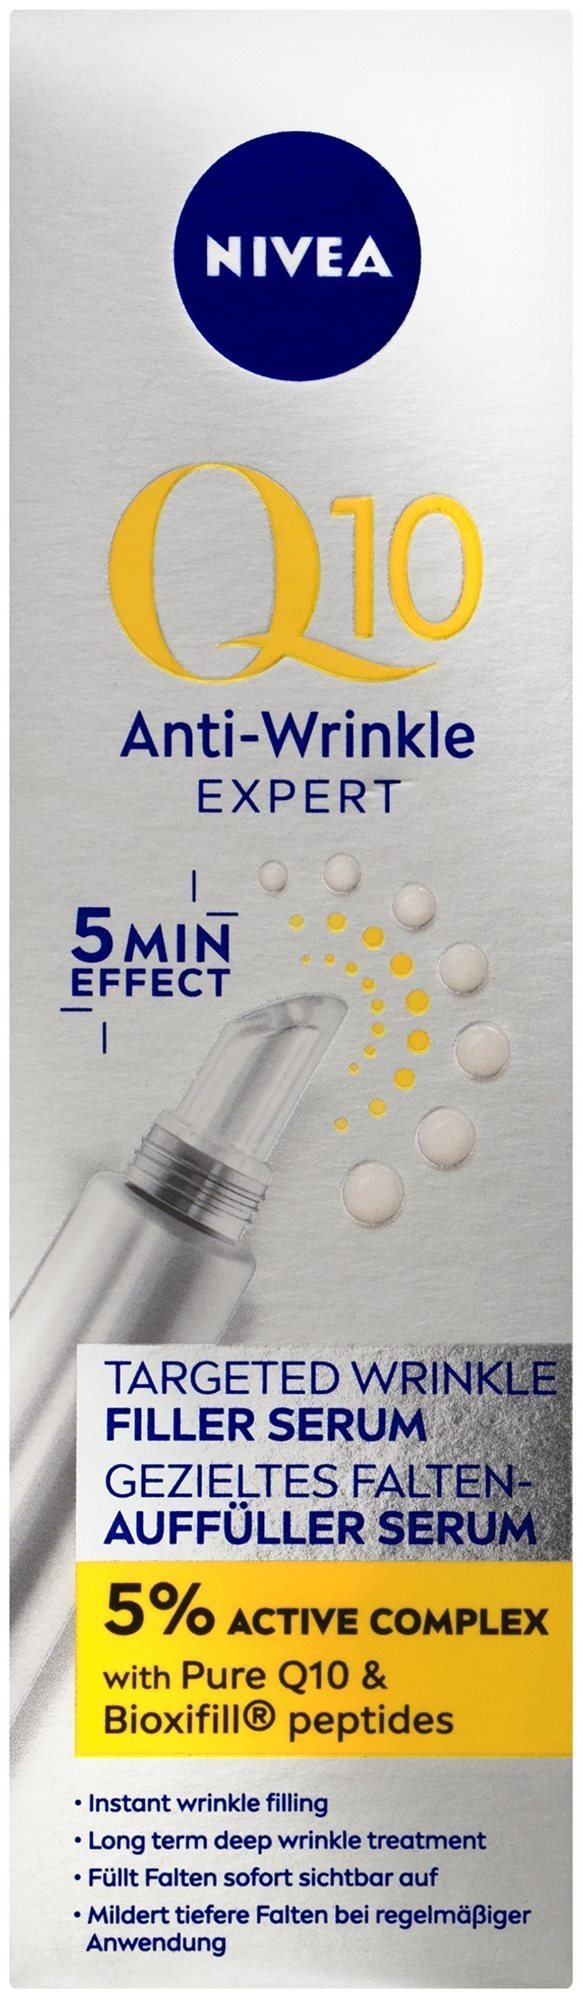 NIVEA Q10 Anti Wrinkle Targeted Wrinkle Filler